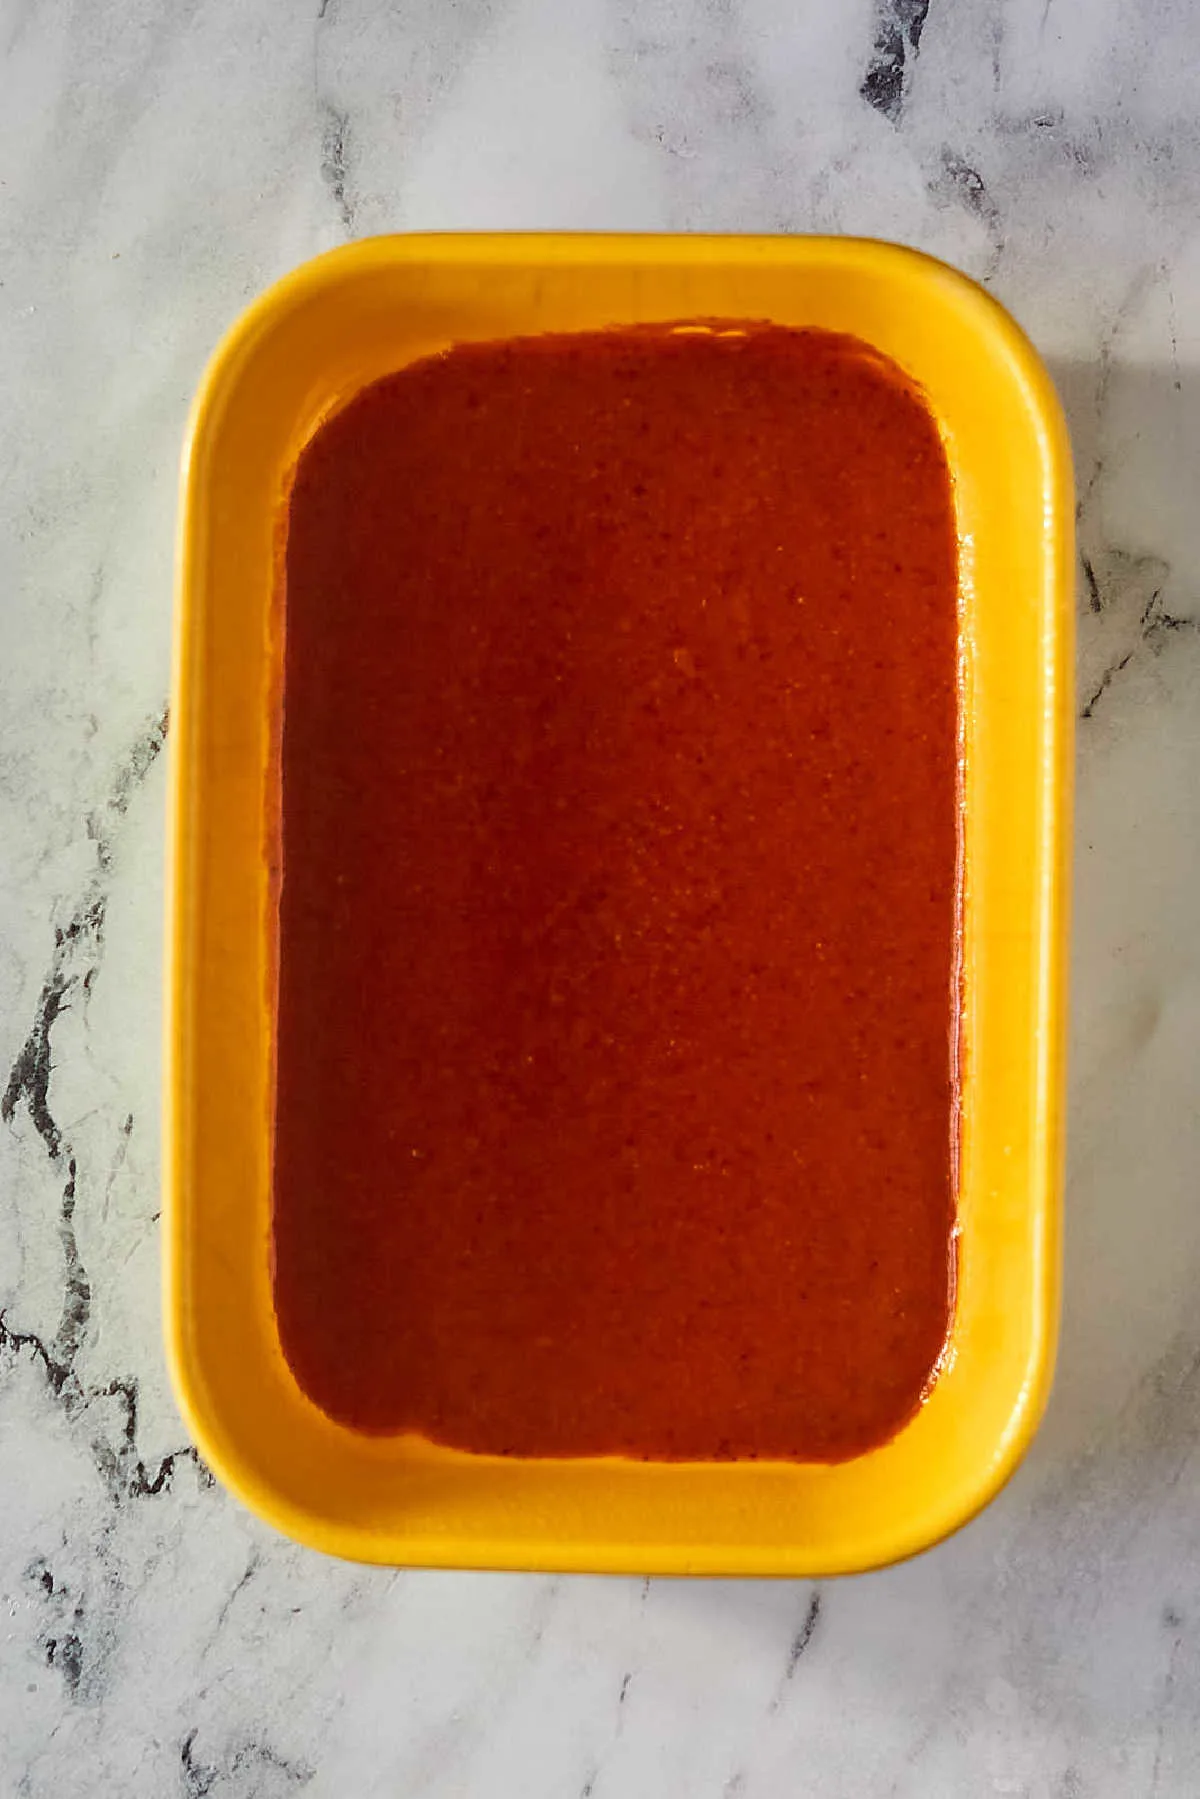 Red enchilada sauce in bottom of pan, ready for enchiladas. 